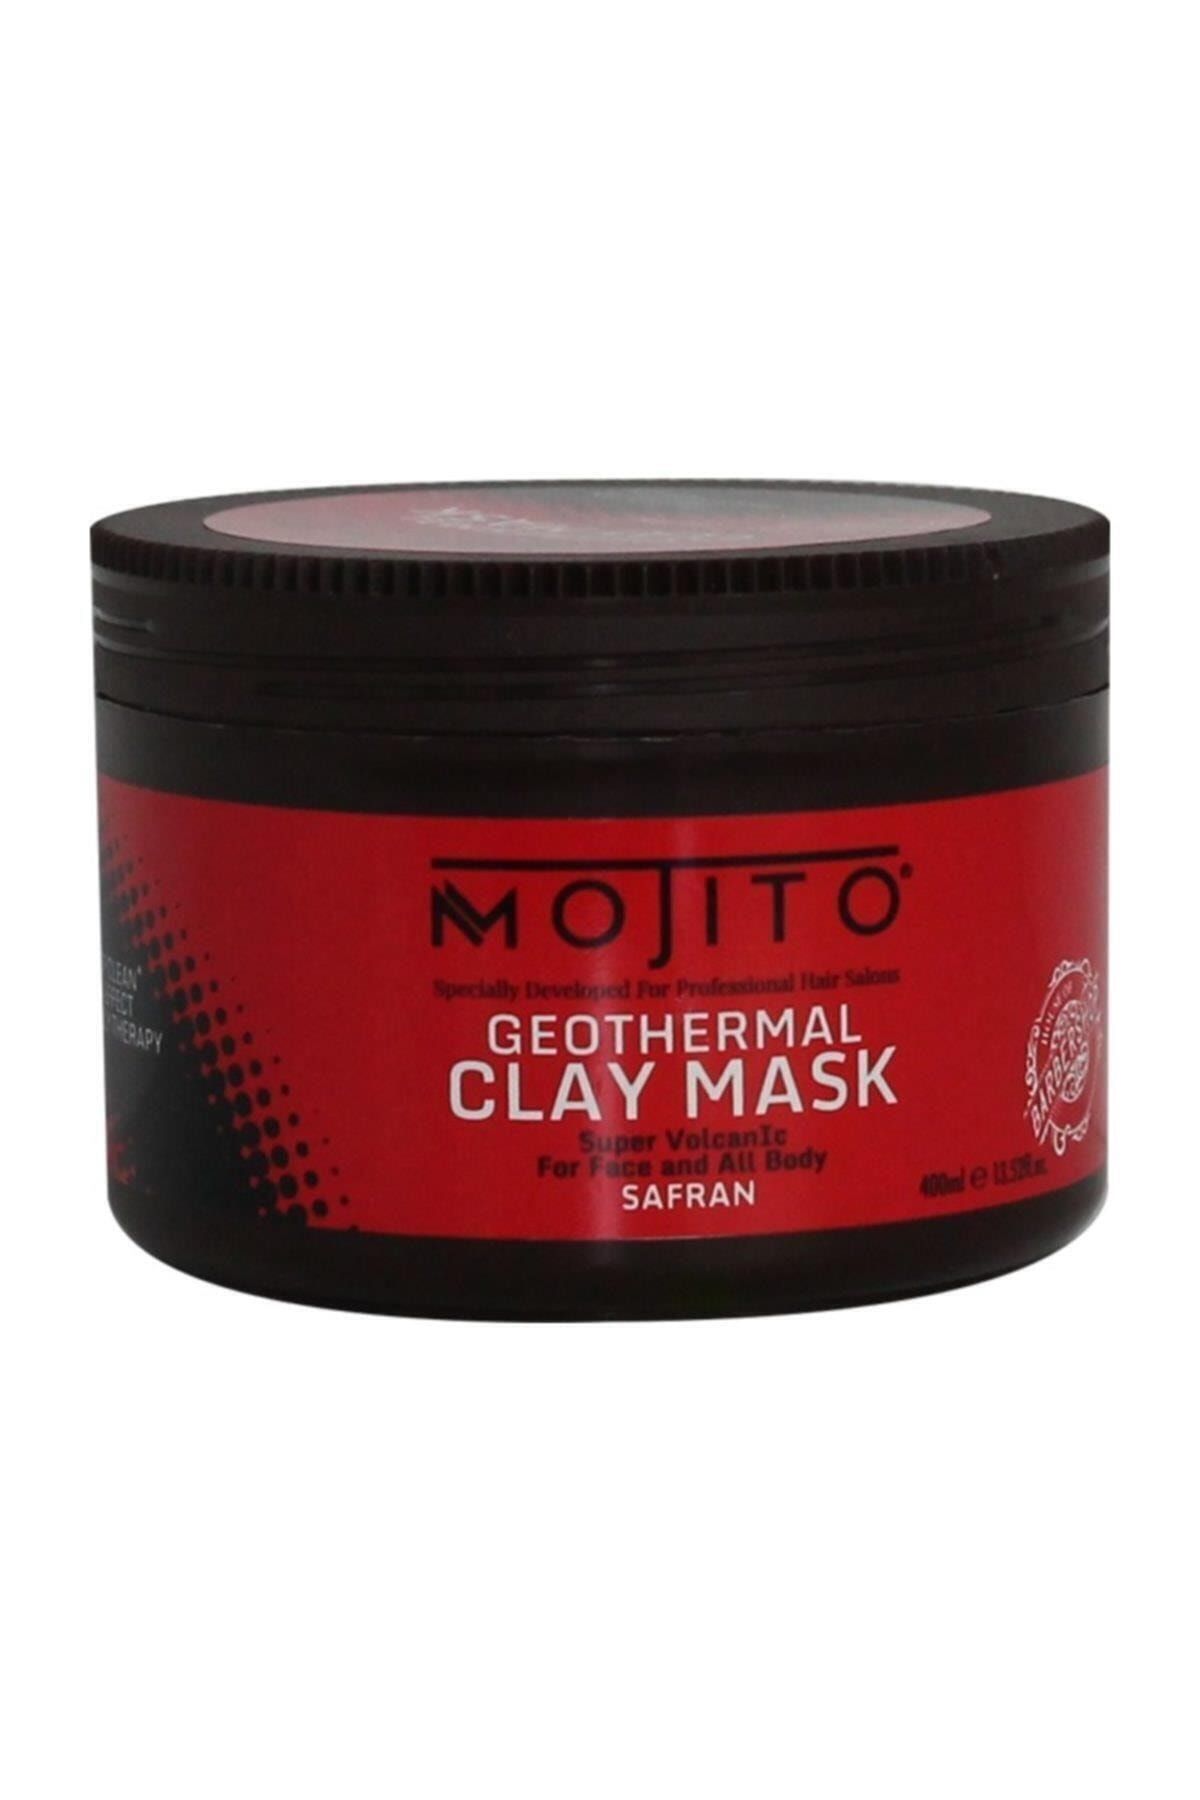 Mojito Geothermal Clay Mask Safran 400ml